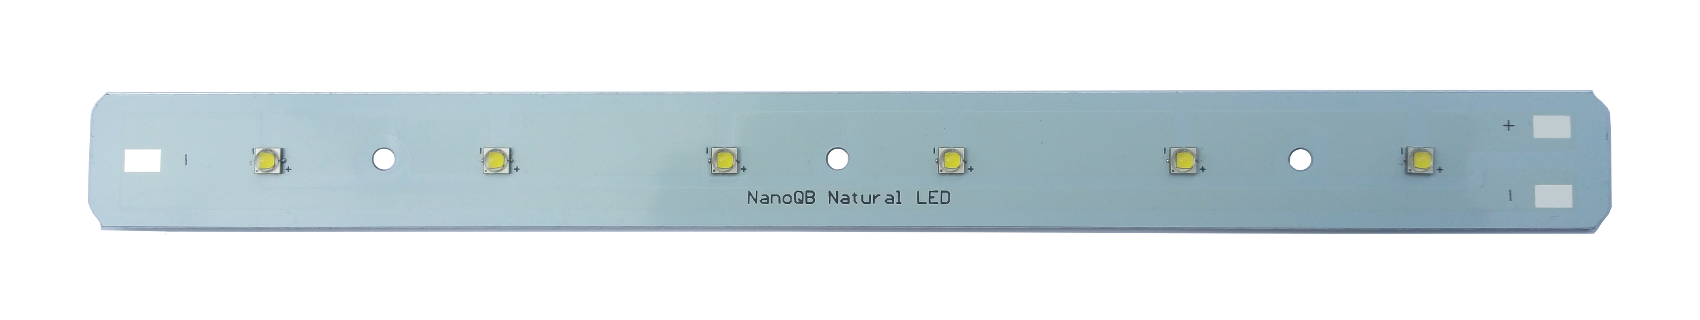 NanoQB Natural LED – Das LED-Modul für Aquarianer